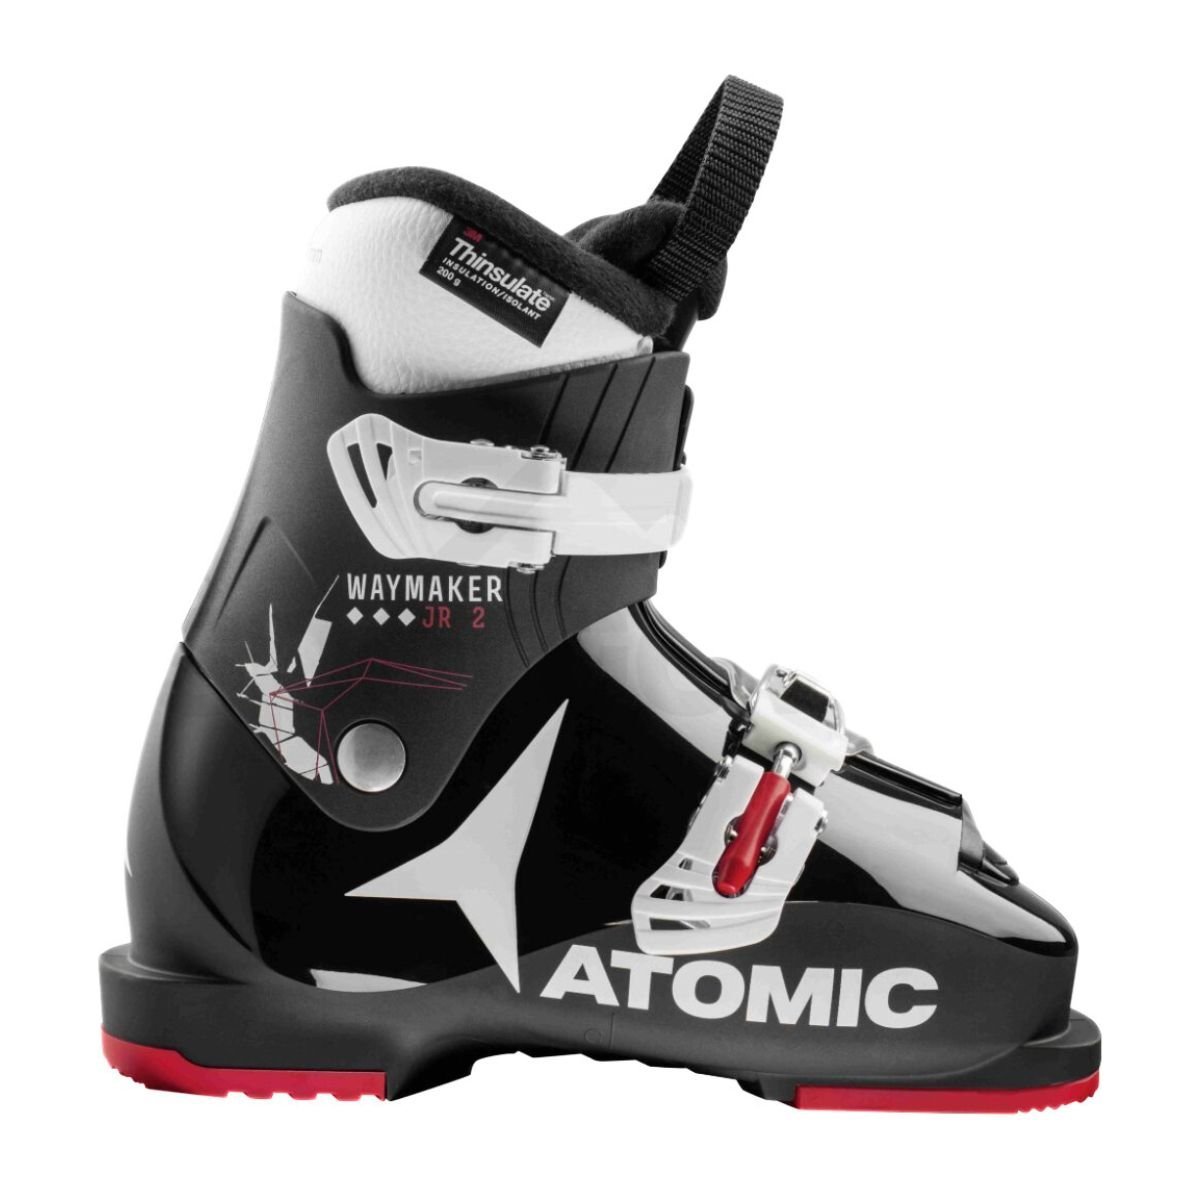 Lyžiarske topánky Atomic Waymaker JR 2 - čierna/biela